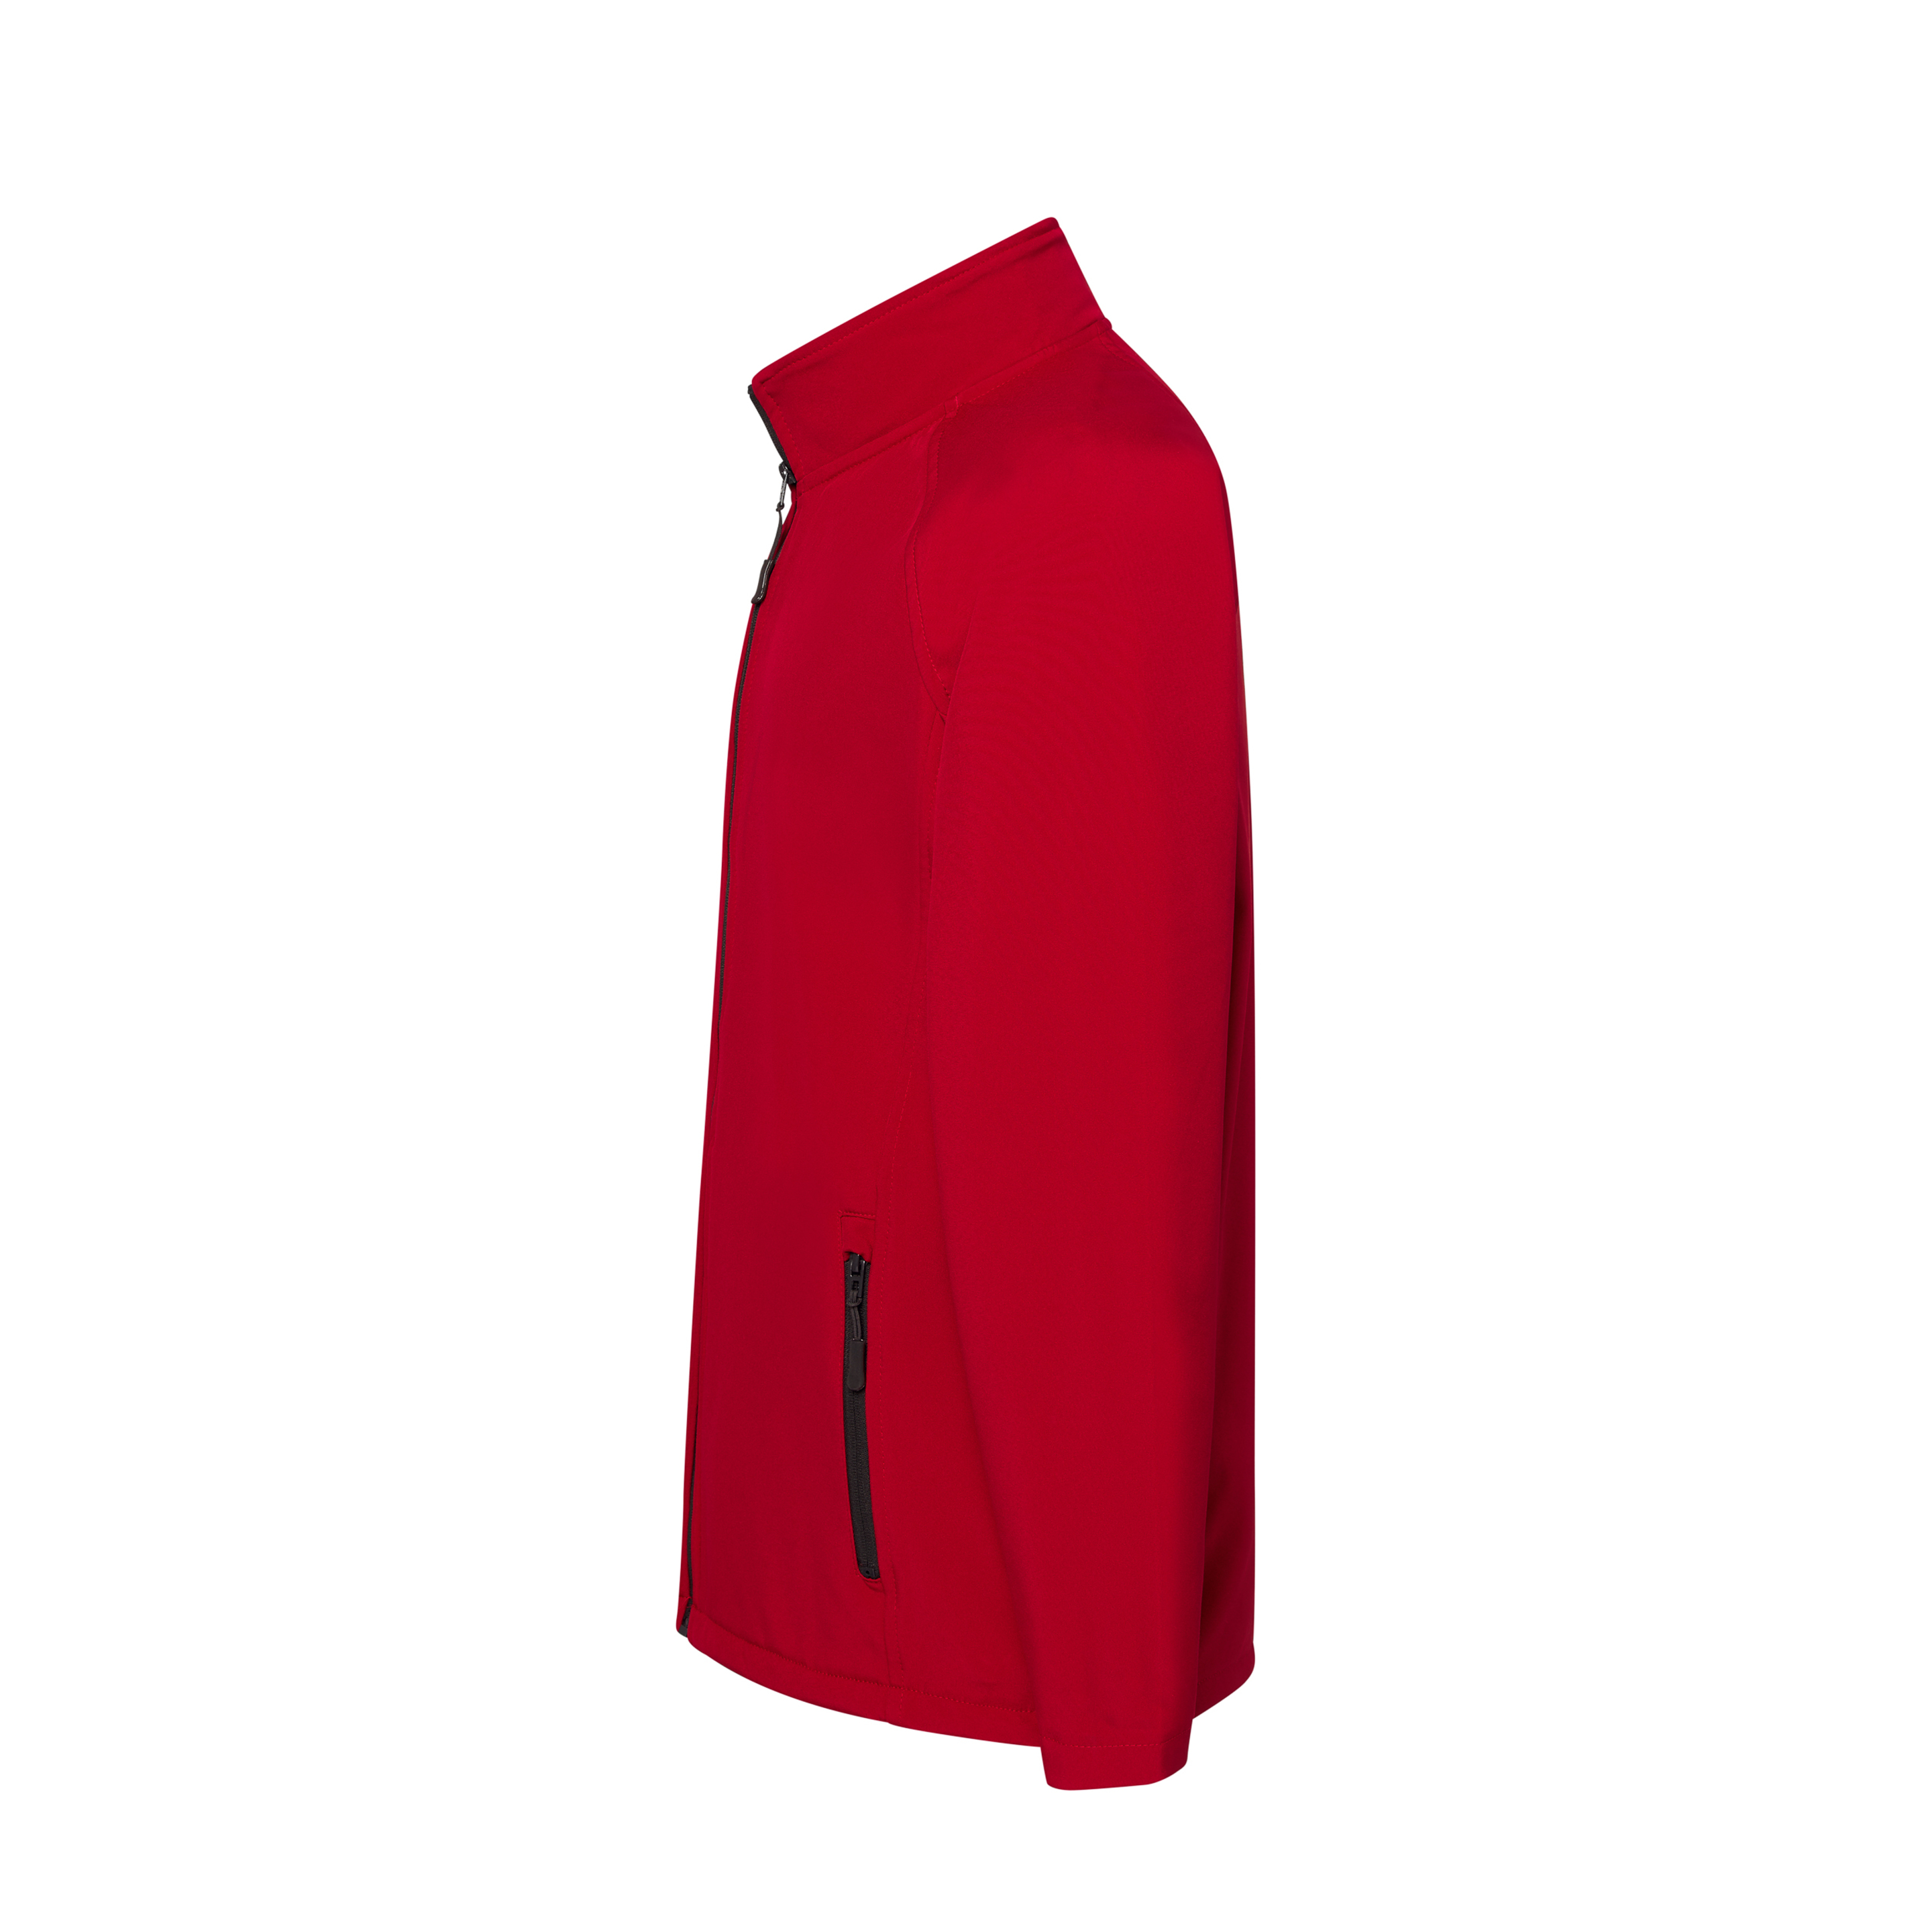 Chaqueta Softshell Jacket Jhk Shirts - Rojo  MKP